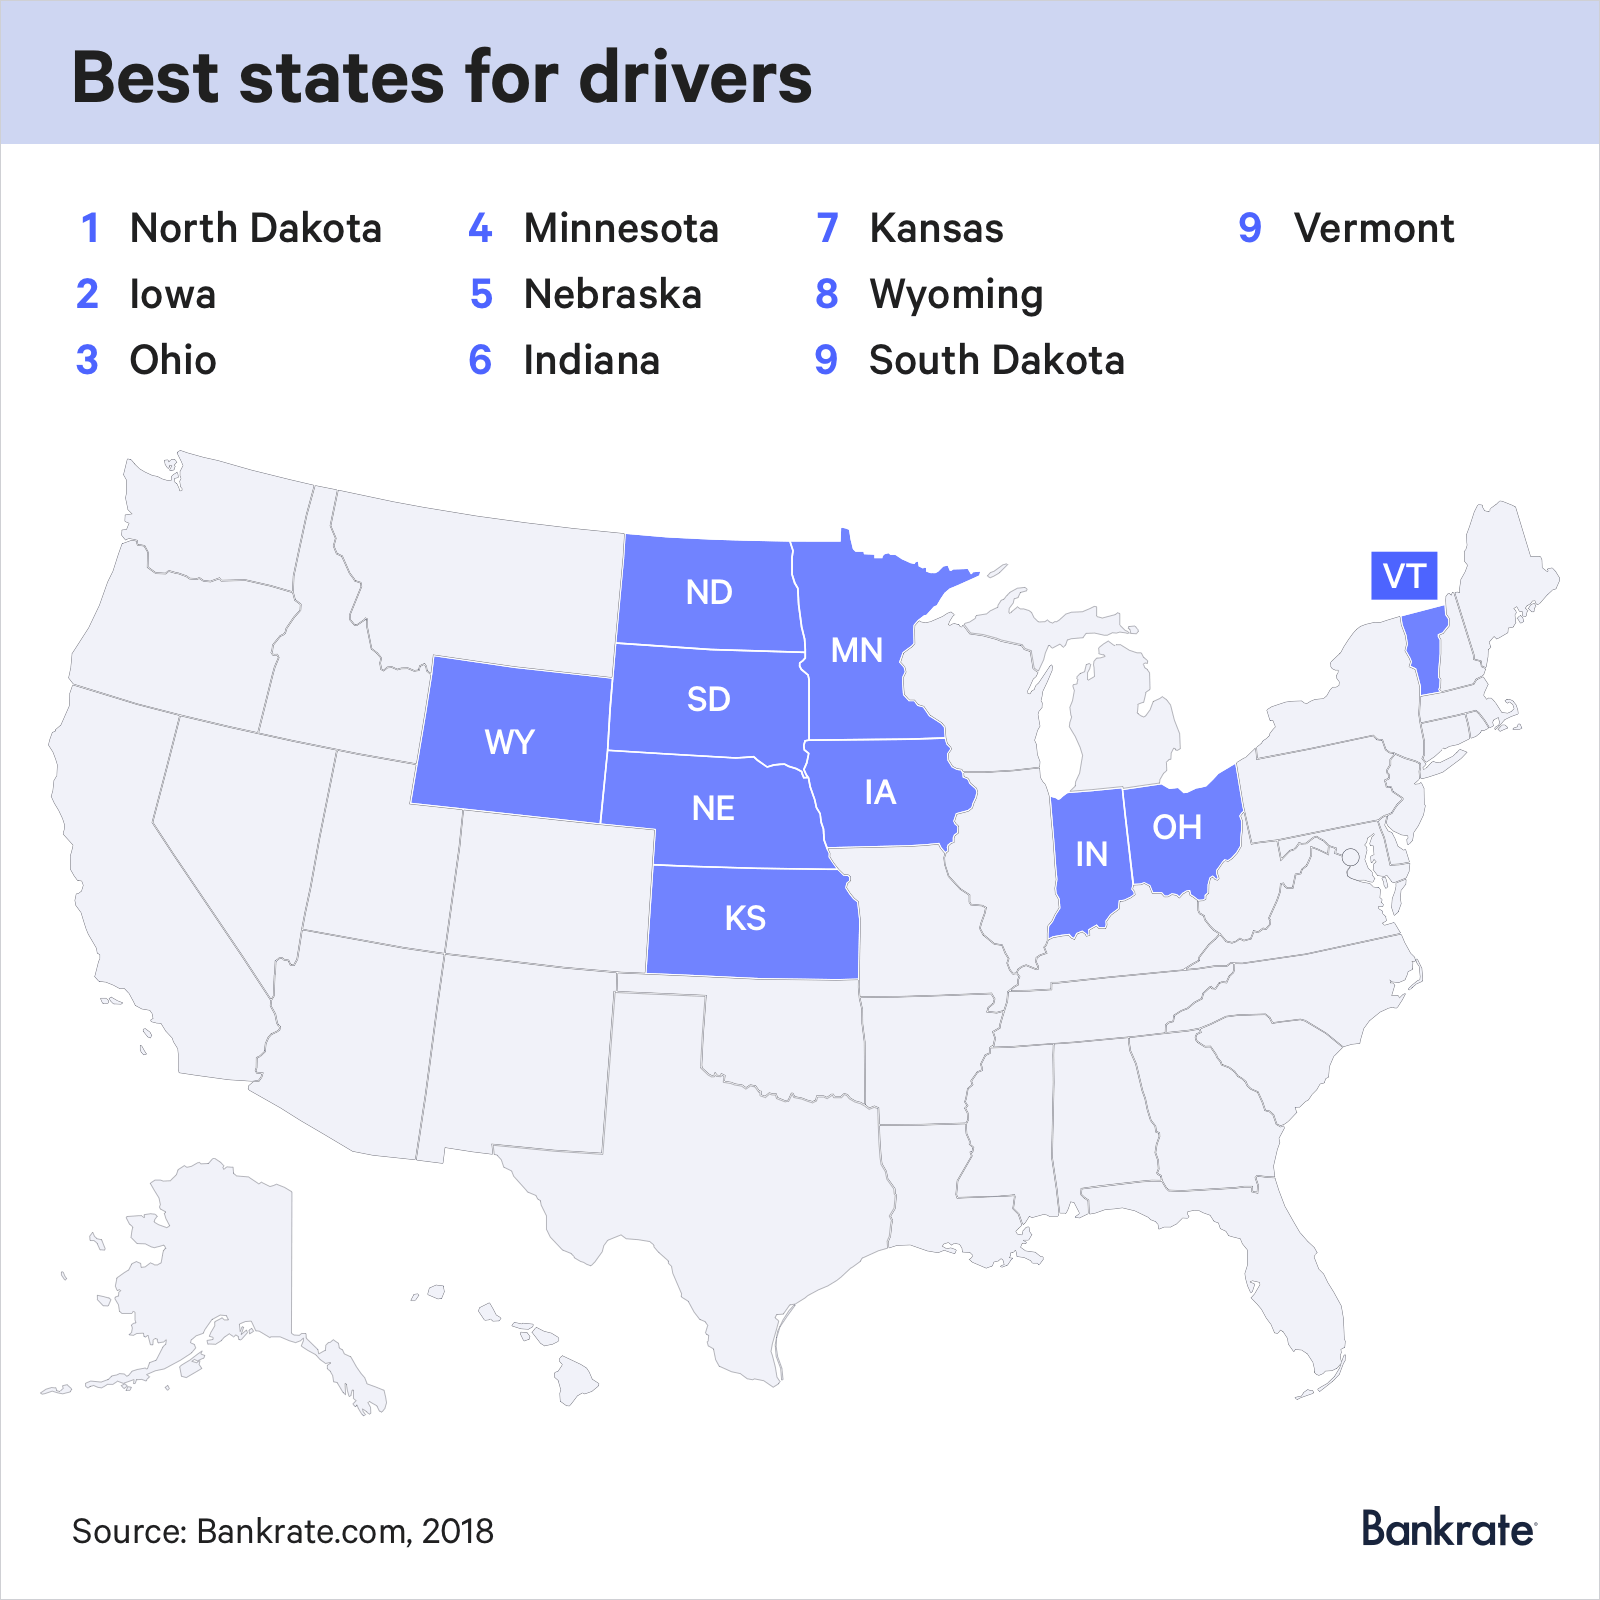 The best states for drivers are North Dakota, Iowa, Ohio, Minnesota, Nebraska, Indiana, Kansas, Wyoming, South Dakota, Vermont